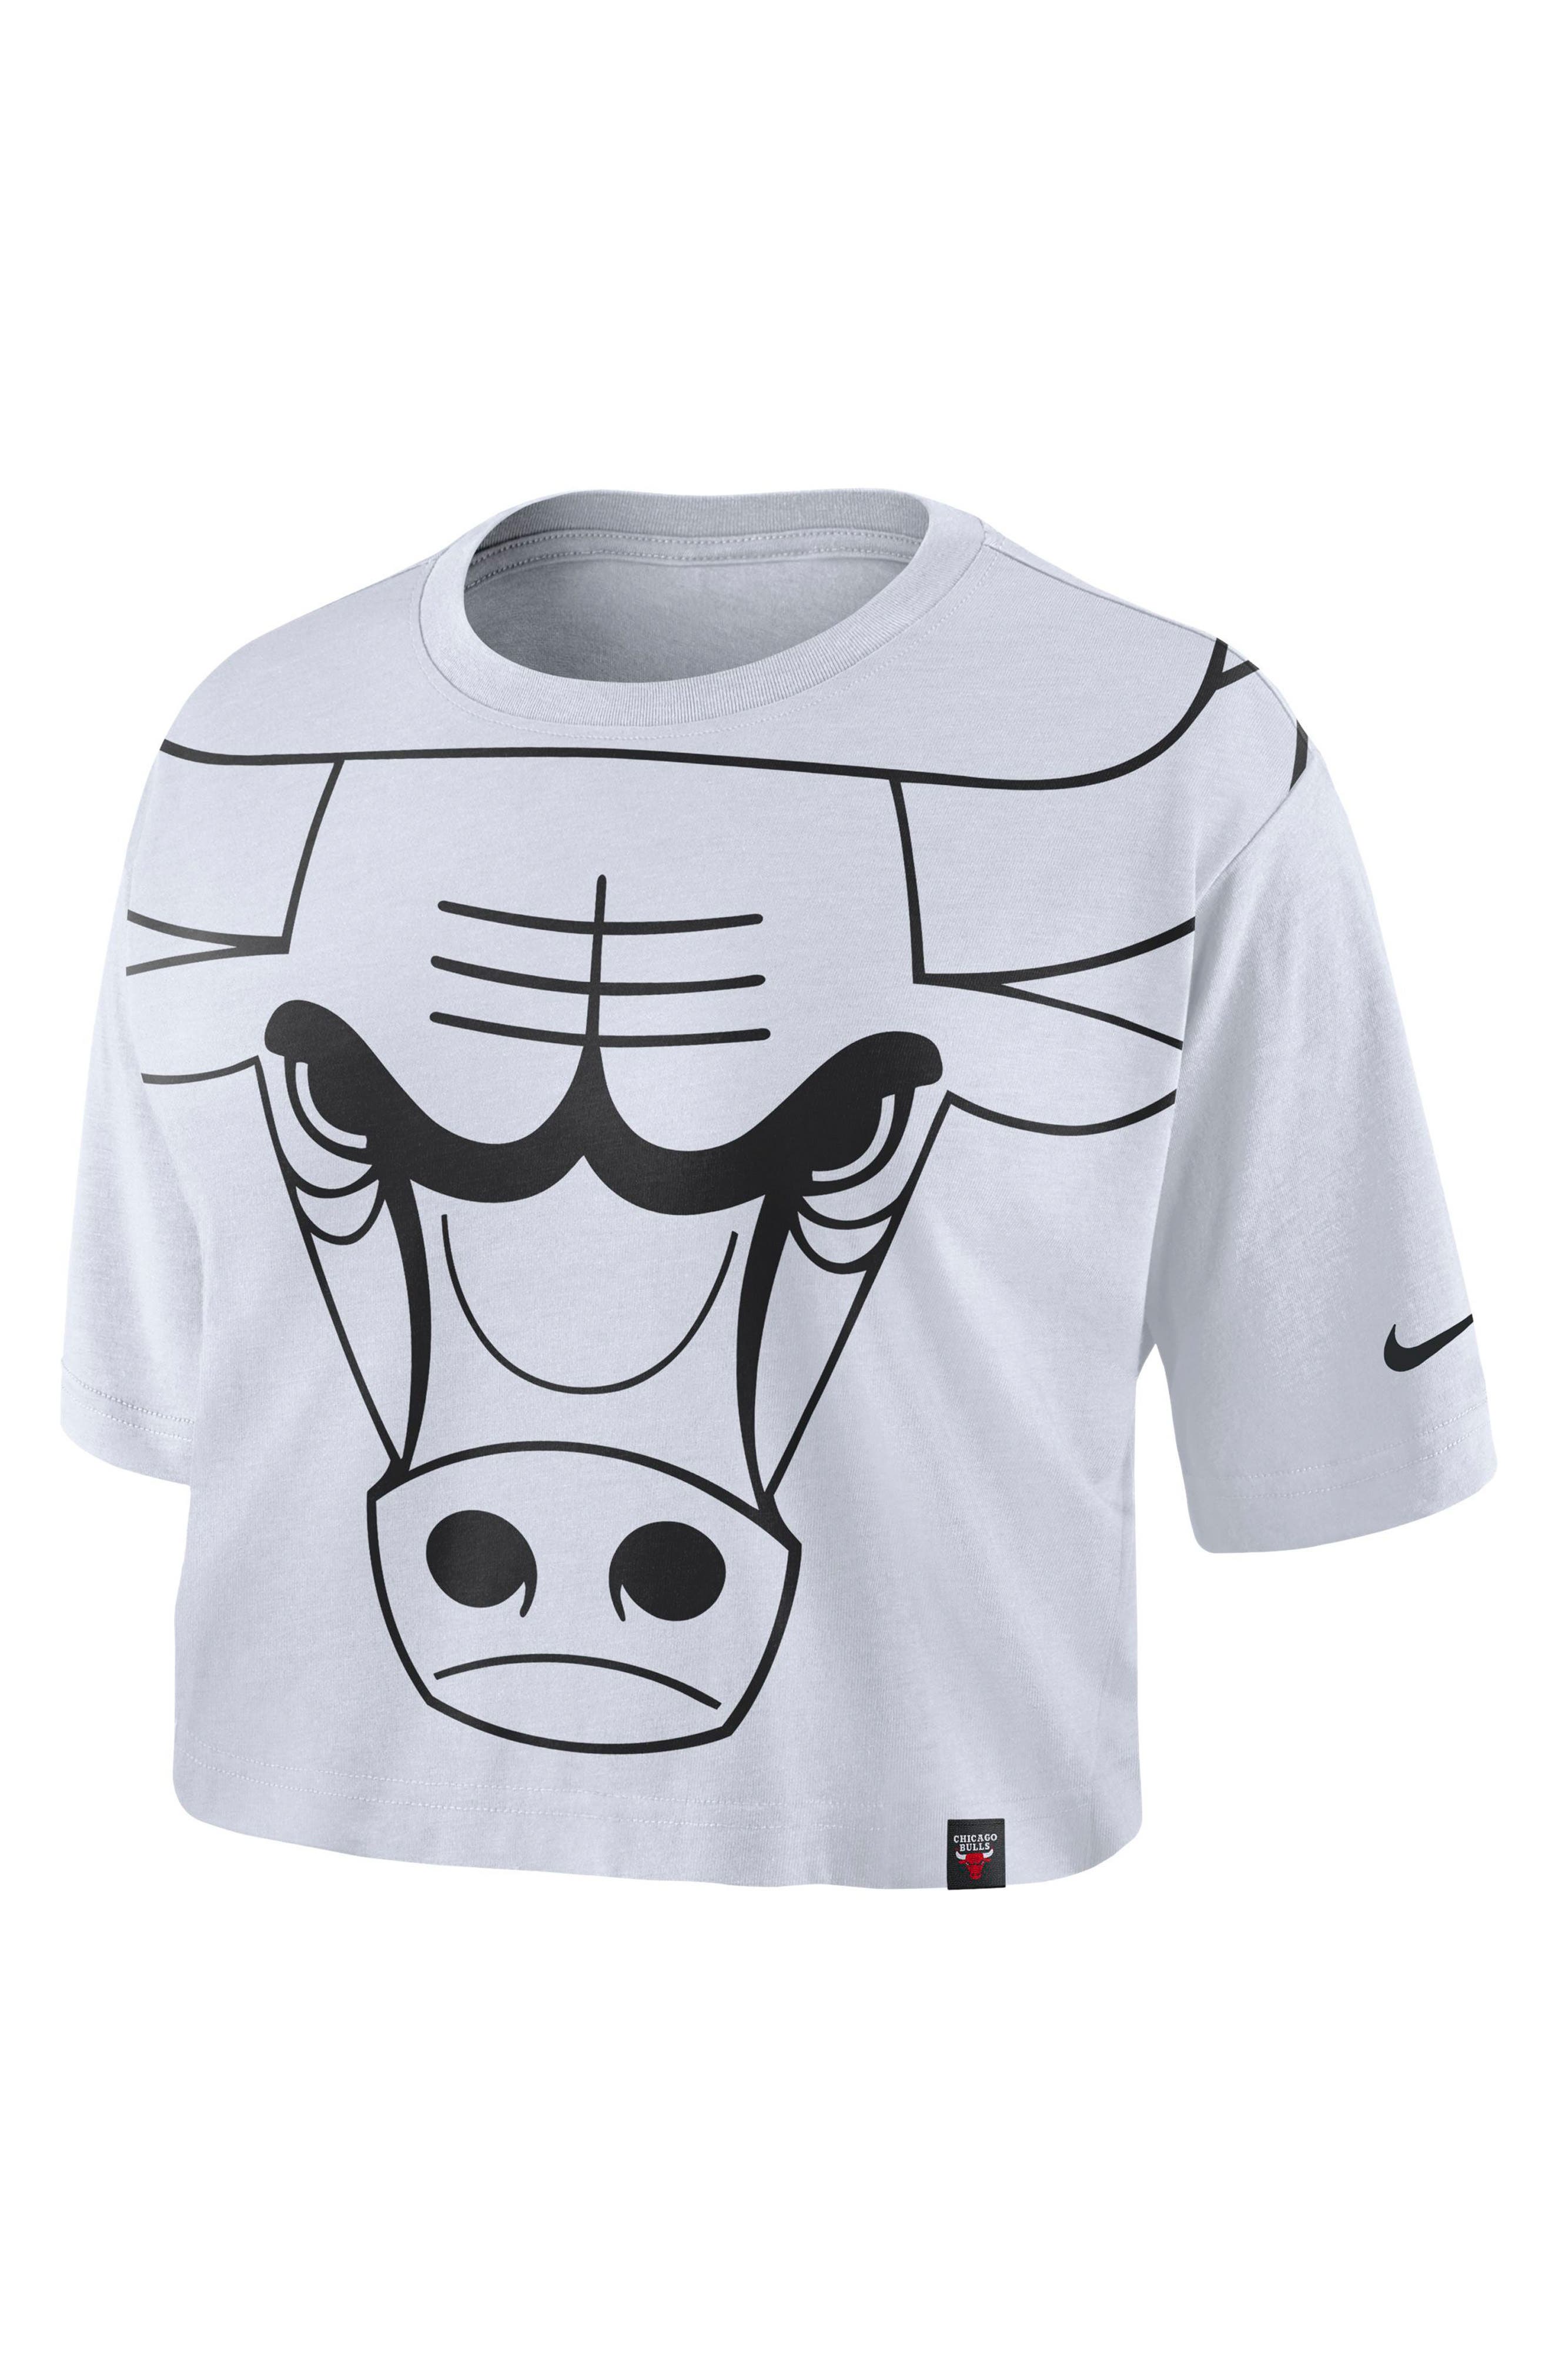 bulls crop top hoodie